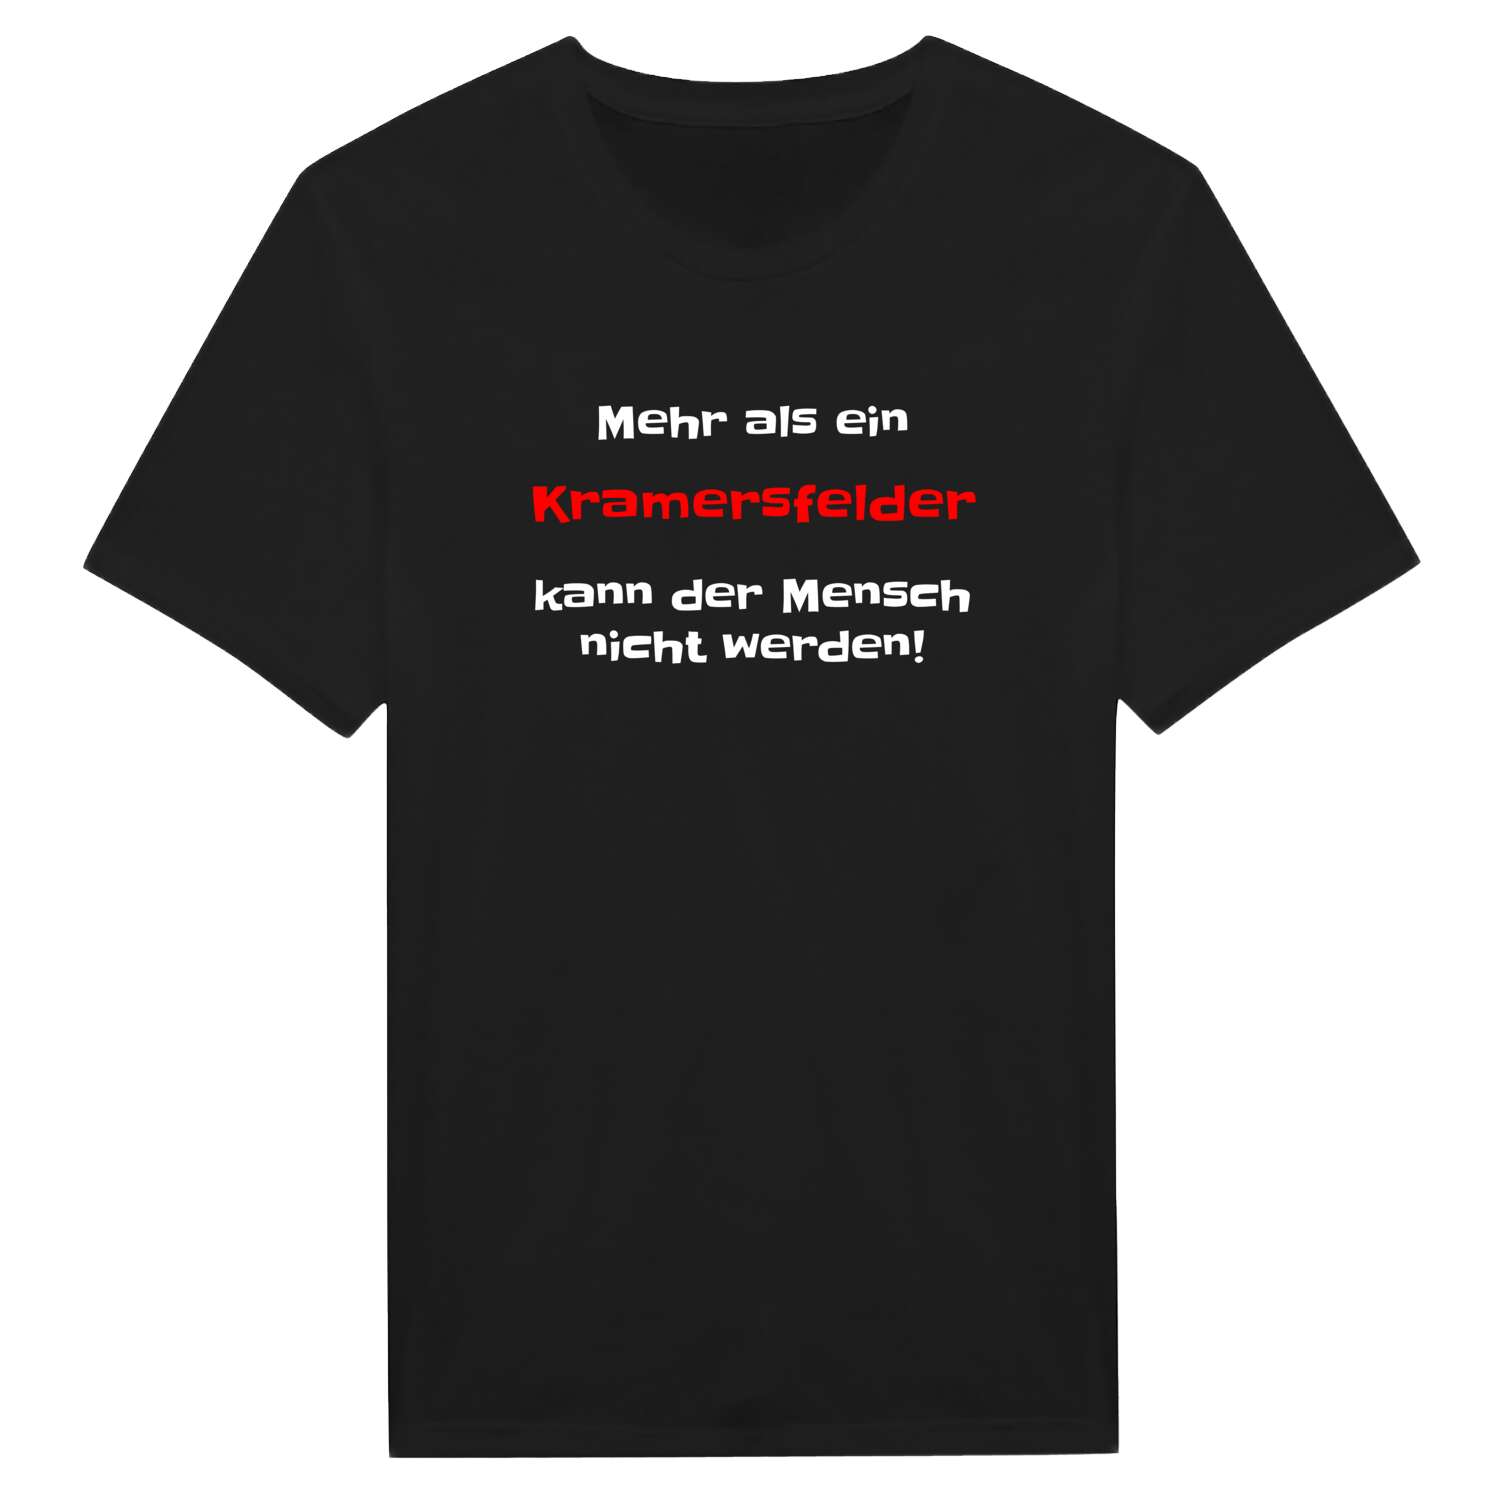 Kramersfeld T-Shirt »Mehr als ein«